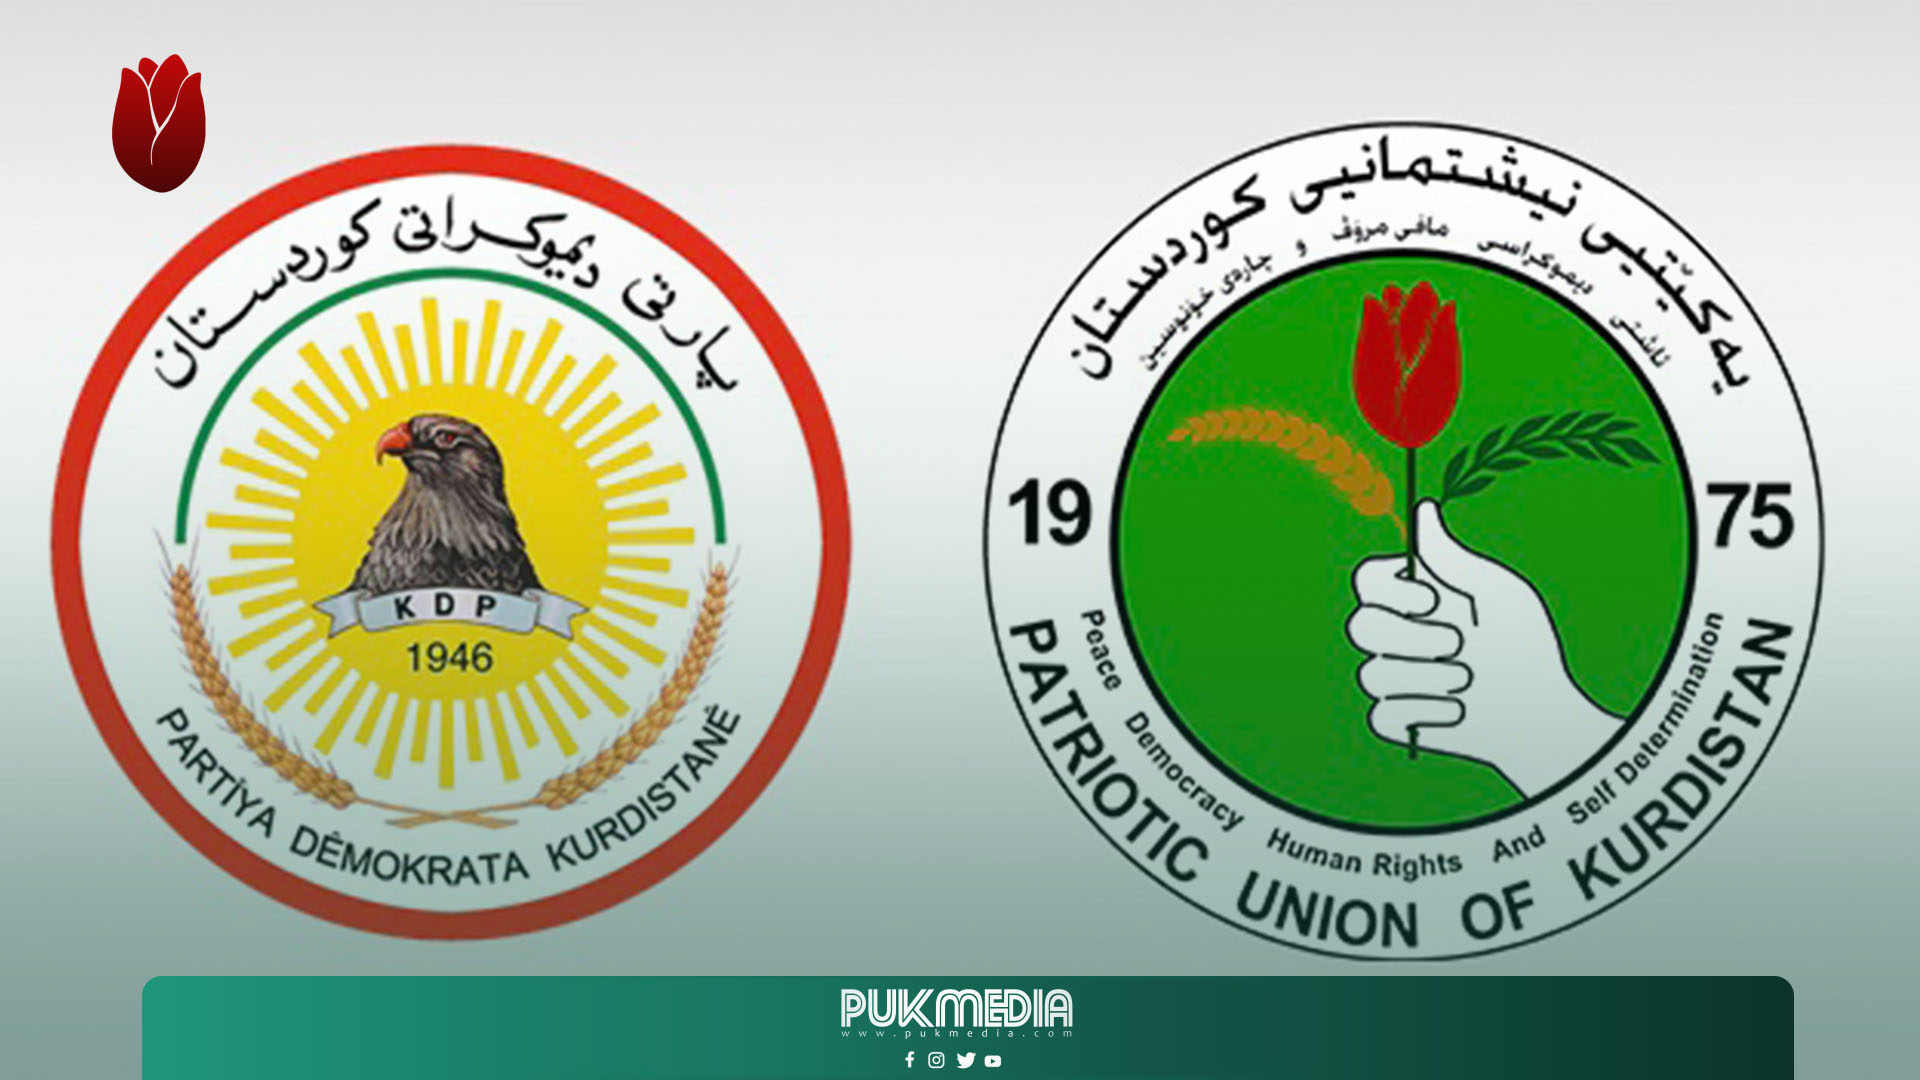 الاتحاد الوطني يوجه برقية تعزية للديمقراطي الكوردستاني